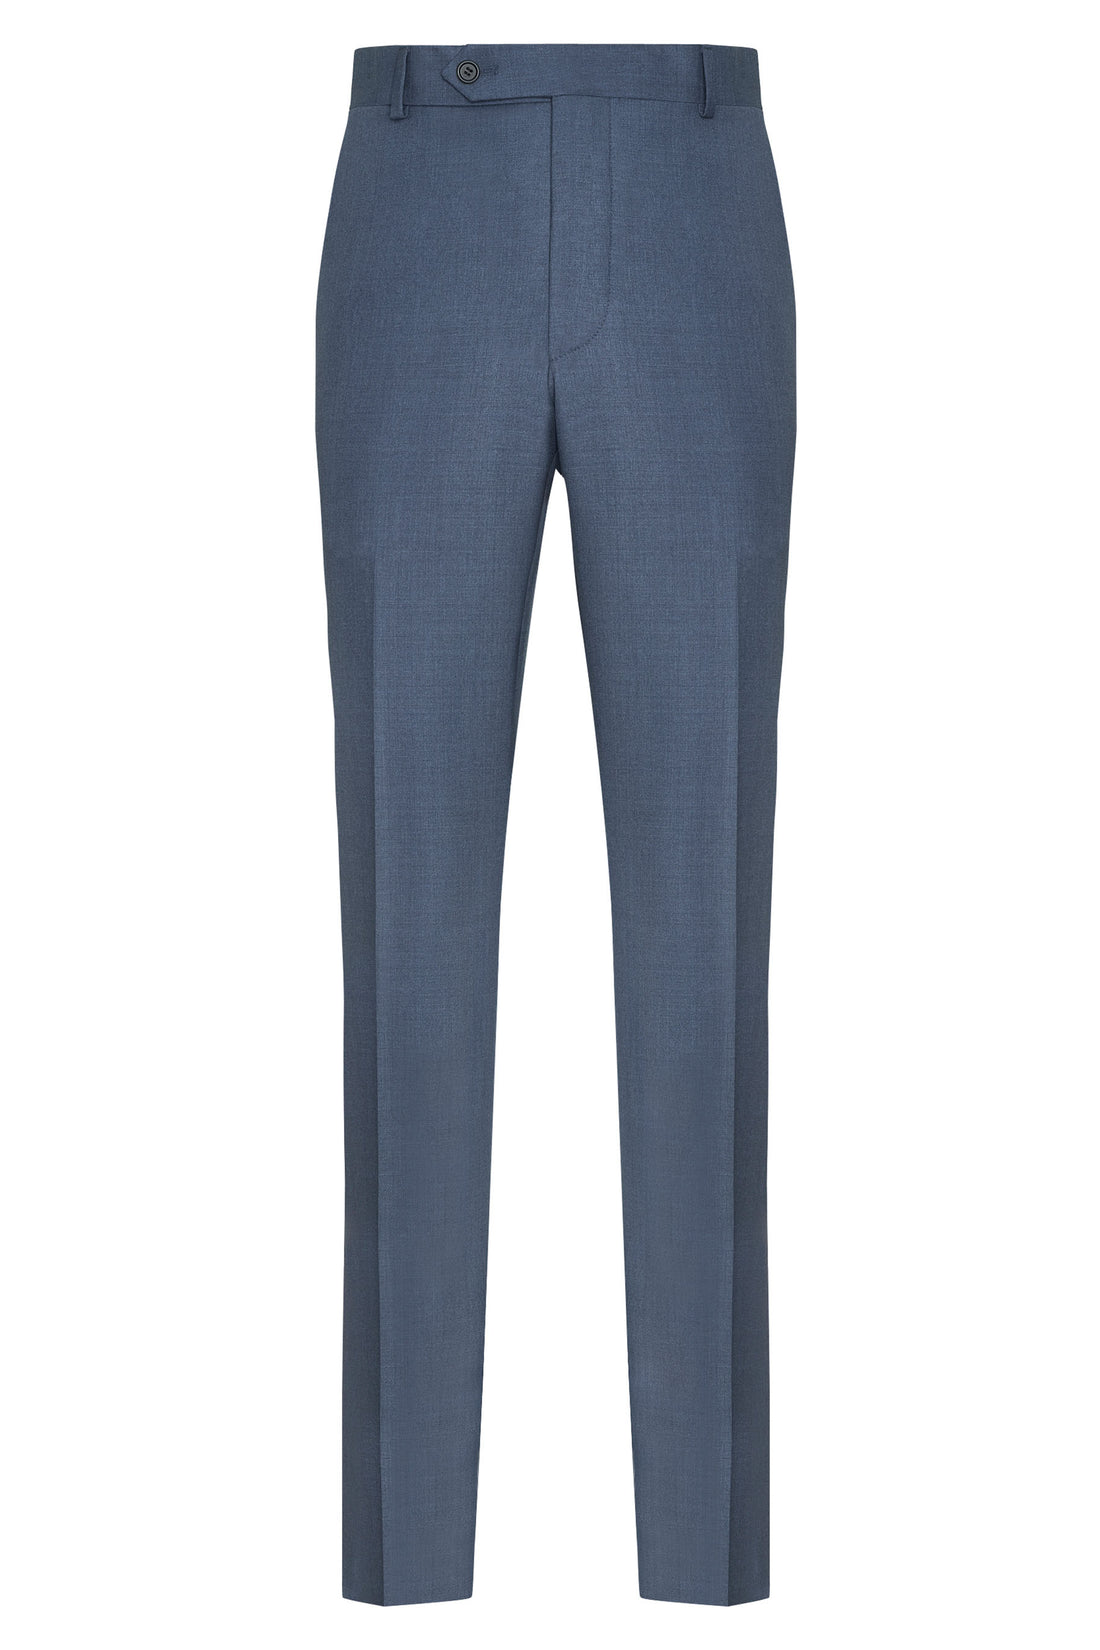 Pantalon bleu britannique sans plis